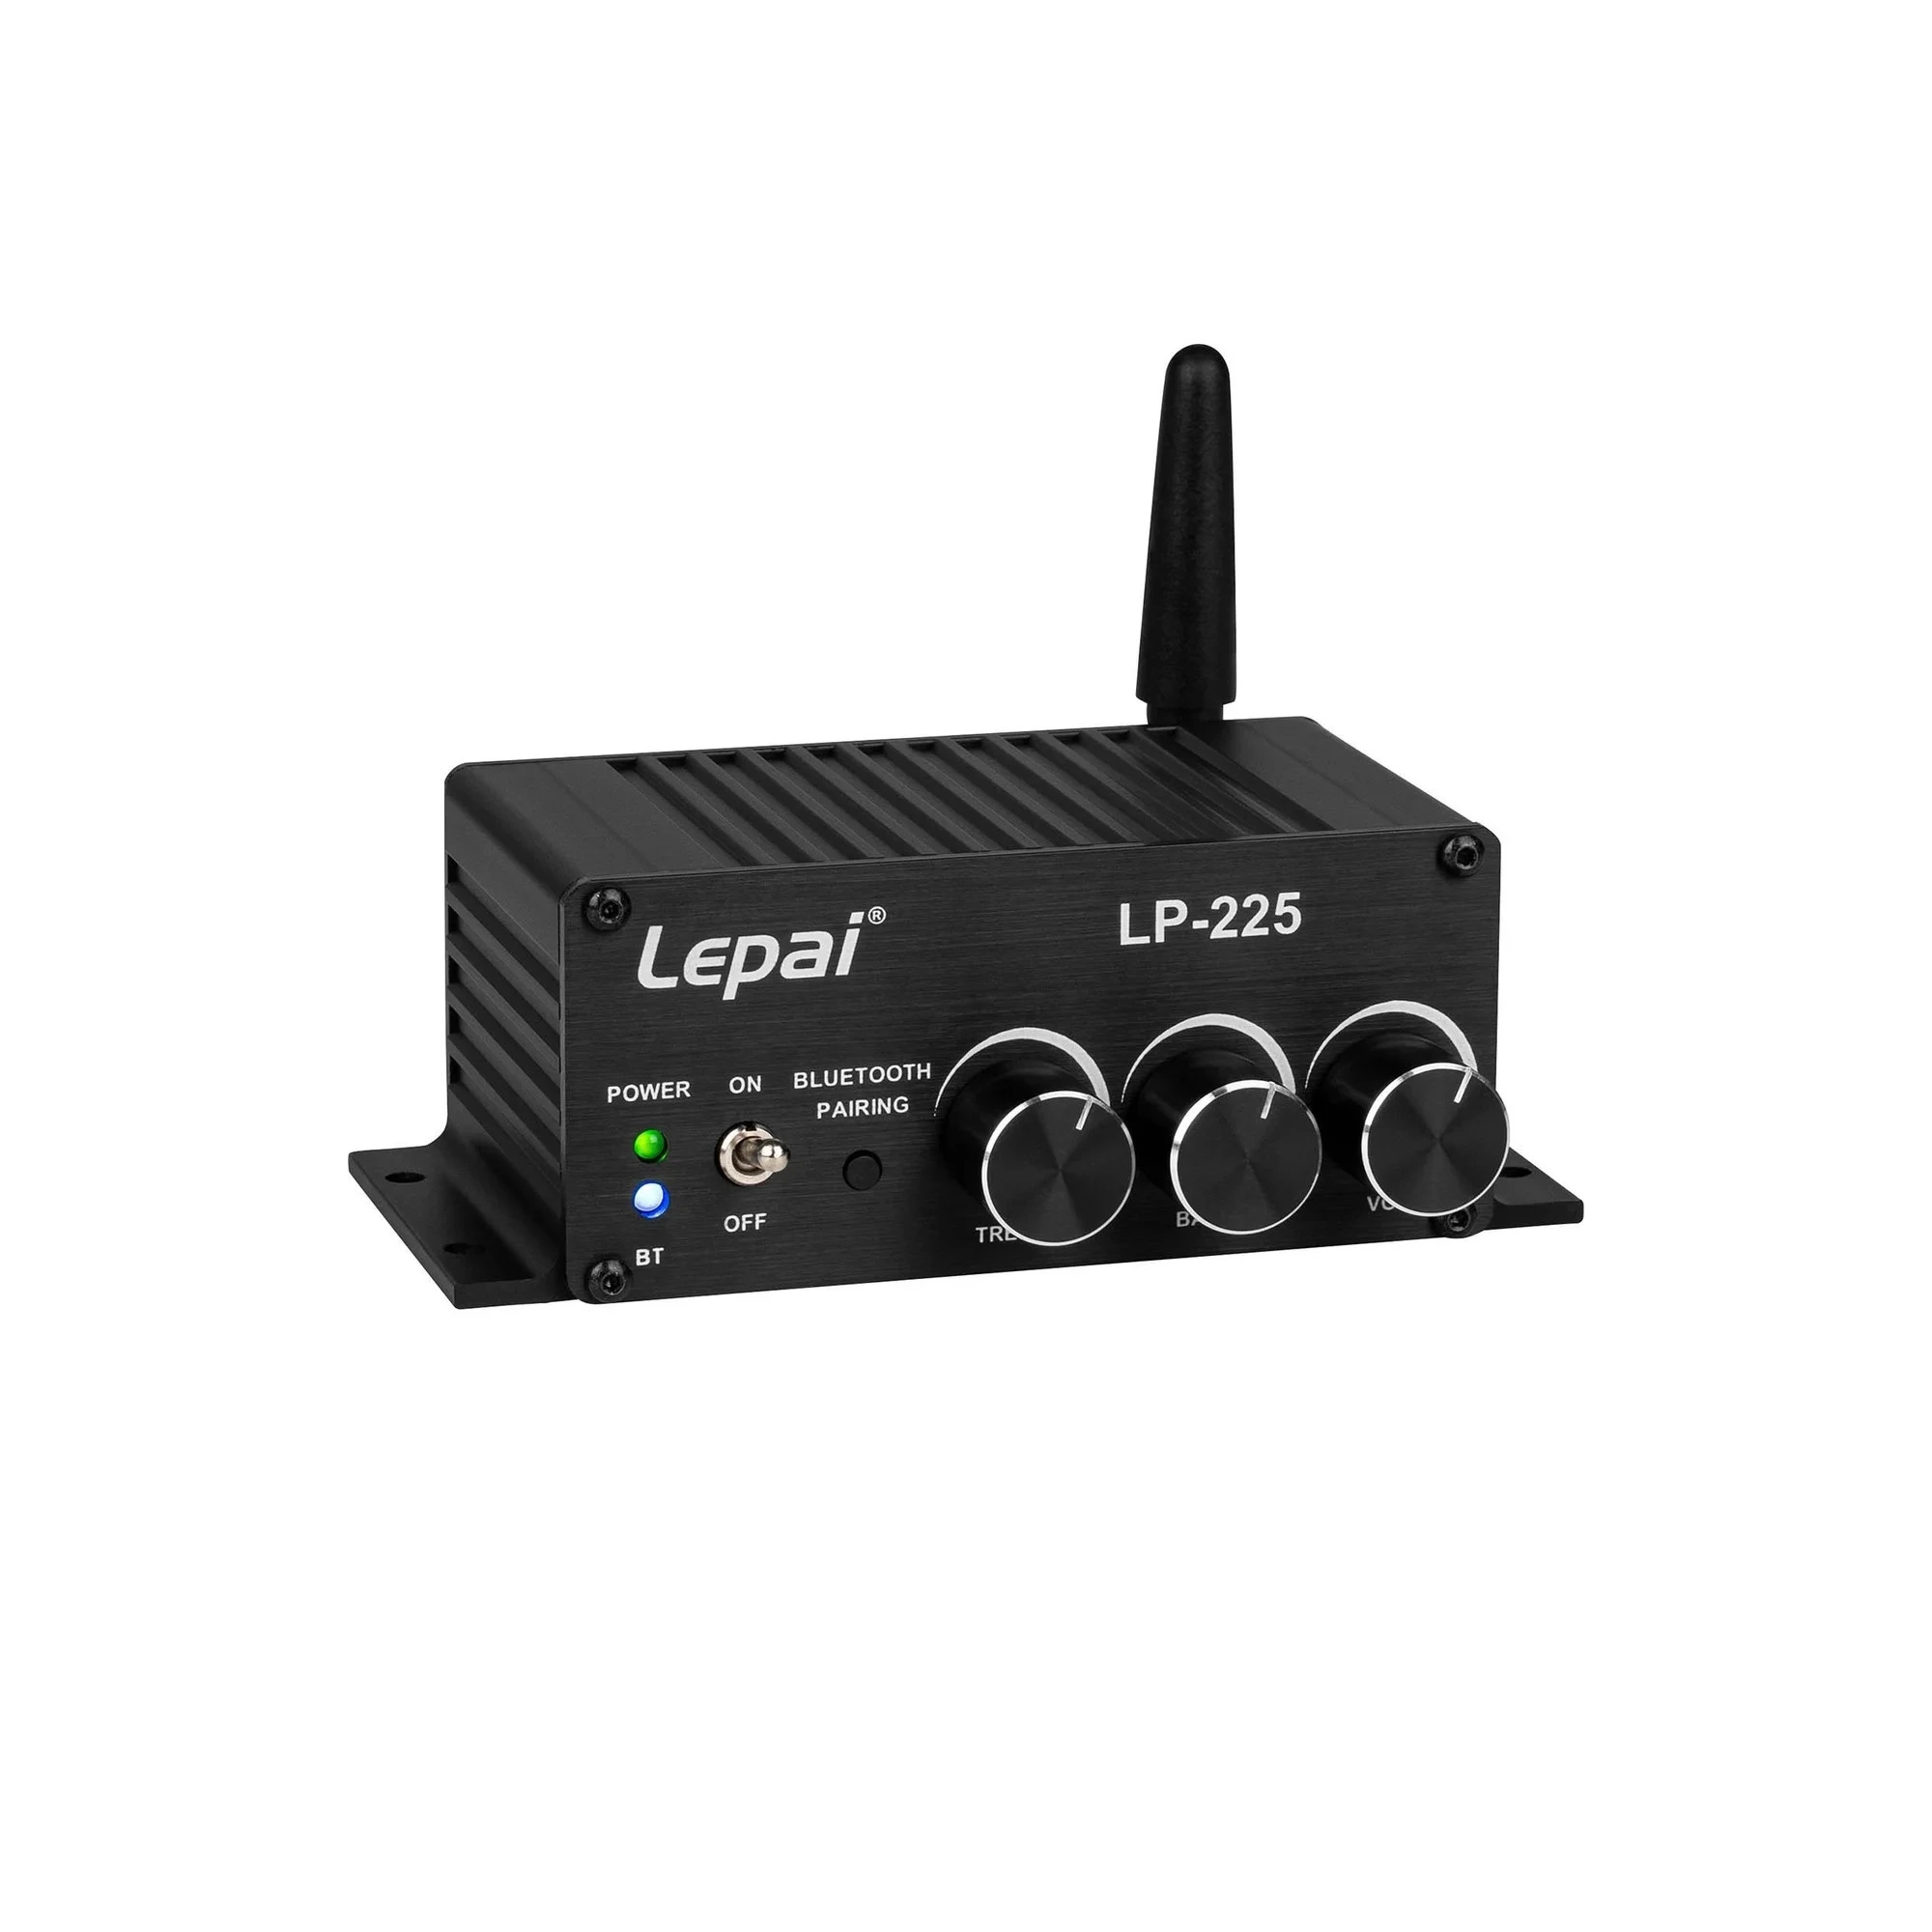 Amplificatoare integrate - Amplificator integrat Lepai LP-225, audioclub.ro